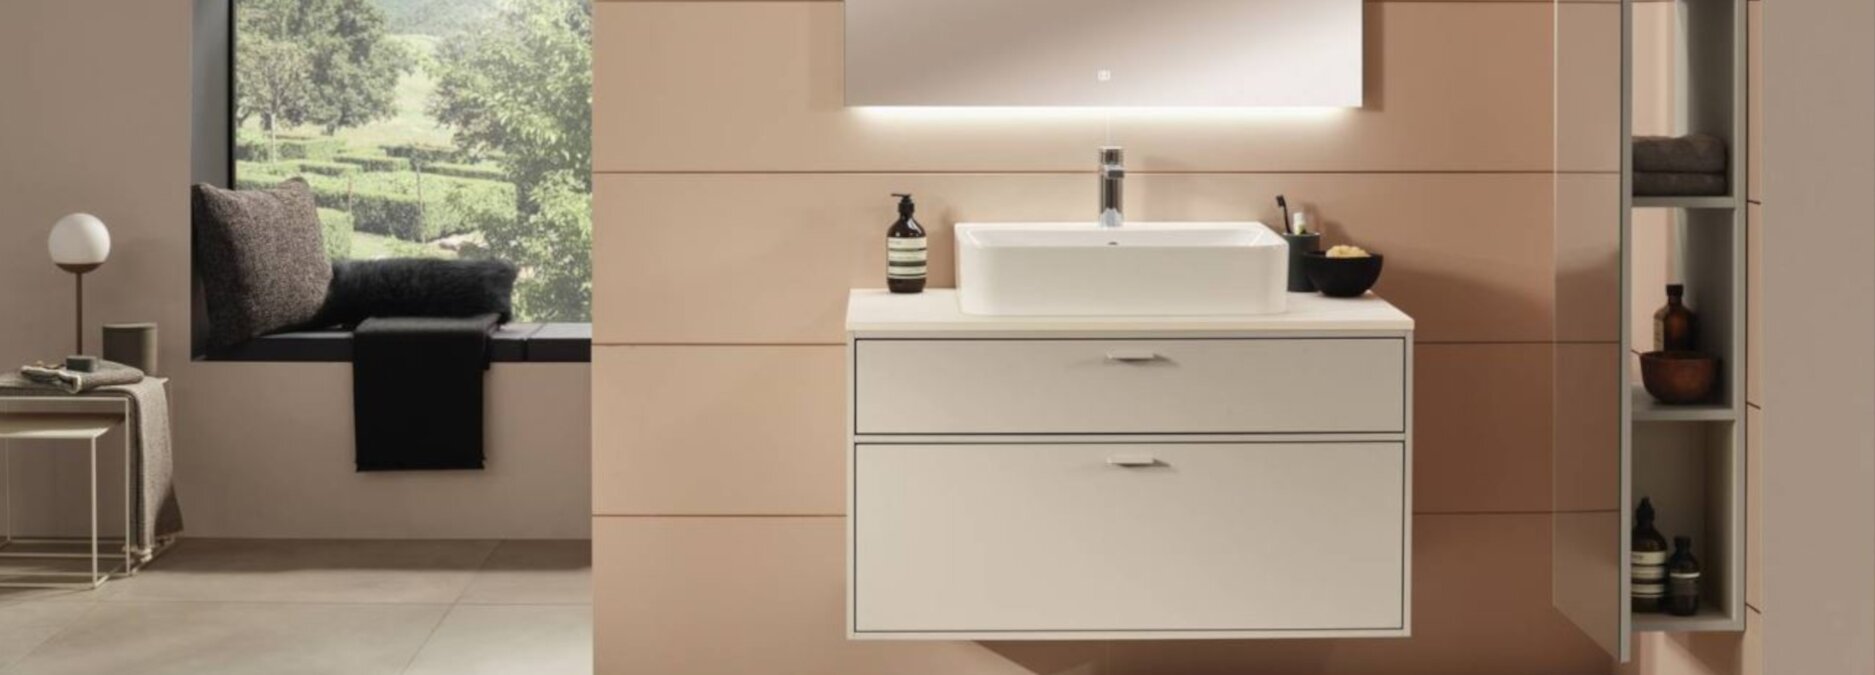 Aufsatzwaschbecken für Ihr besonderes Badezimmer - Aufsatzwaschbecken - Trend | Blog ssd-armaturenshop.de 